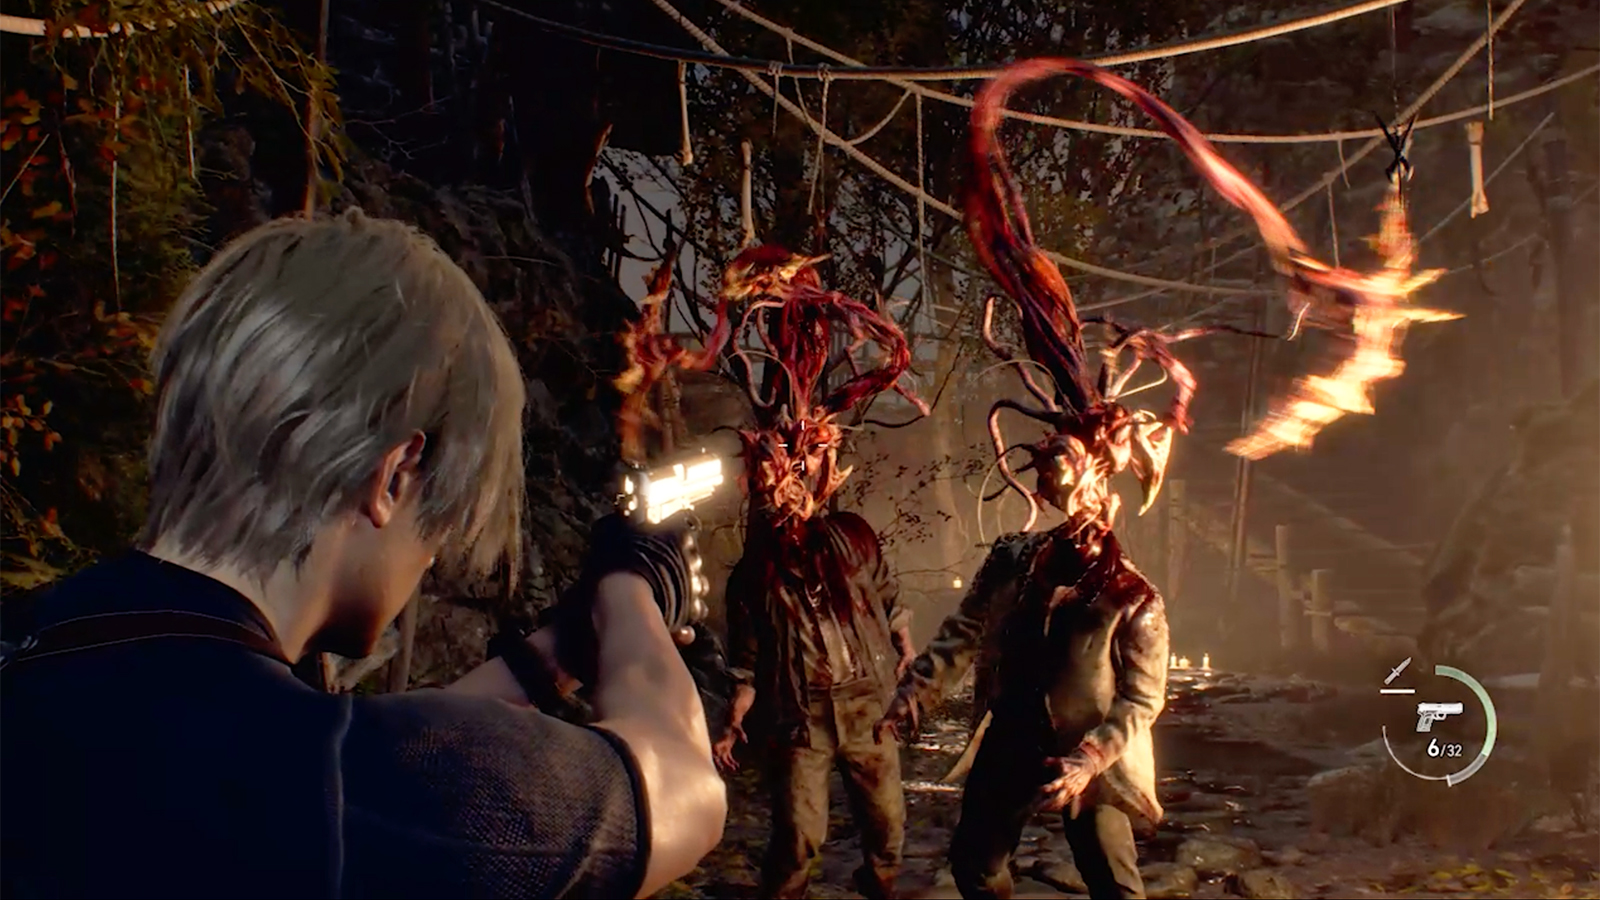 Resident Evil: Code Veronica Remake feito por fã está disponível para  download